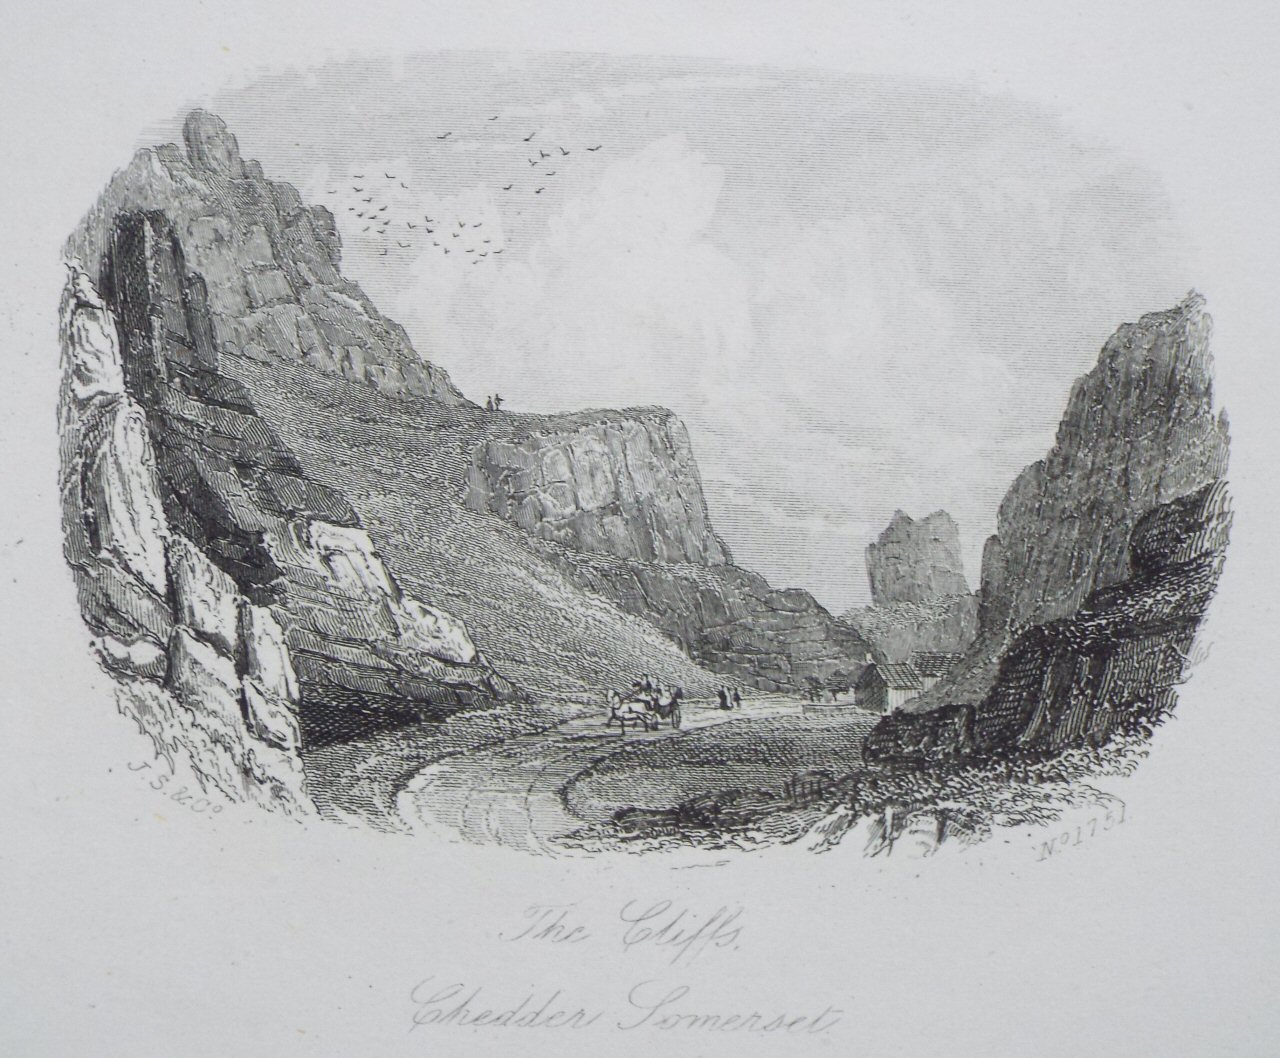 Steel Vignette - The Cliffs, Chedder Somerset - J